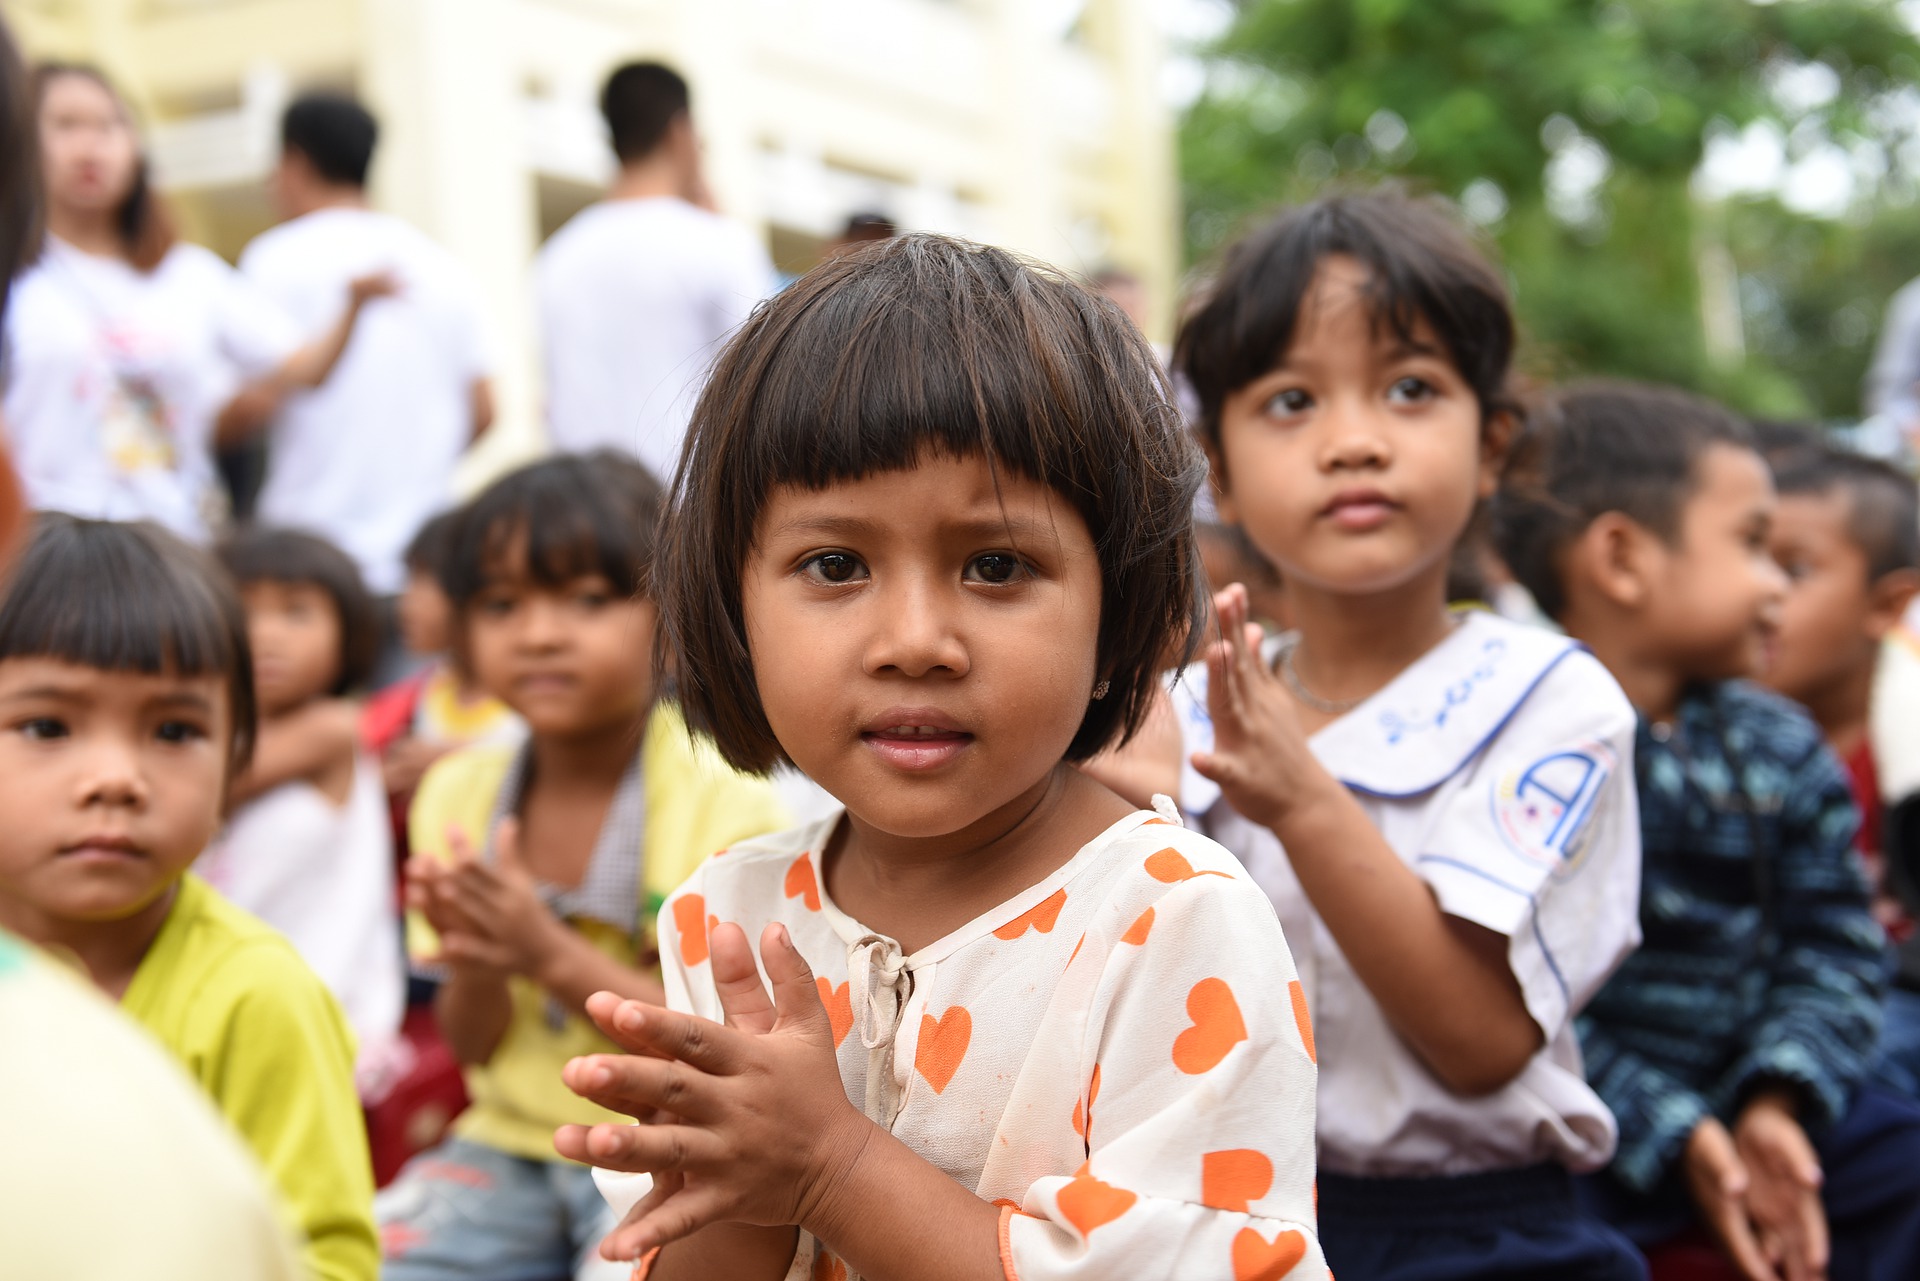 Janvier 2013, Asie: Récents développements en Thaïlande et aux Philippines dans le domaine de l’apatridie 